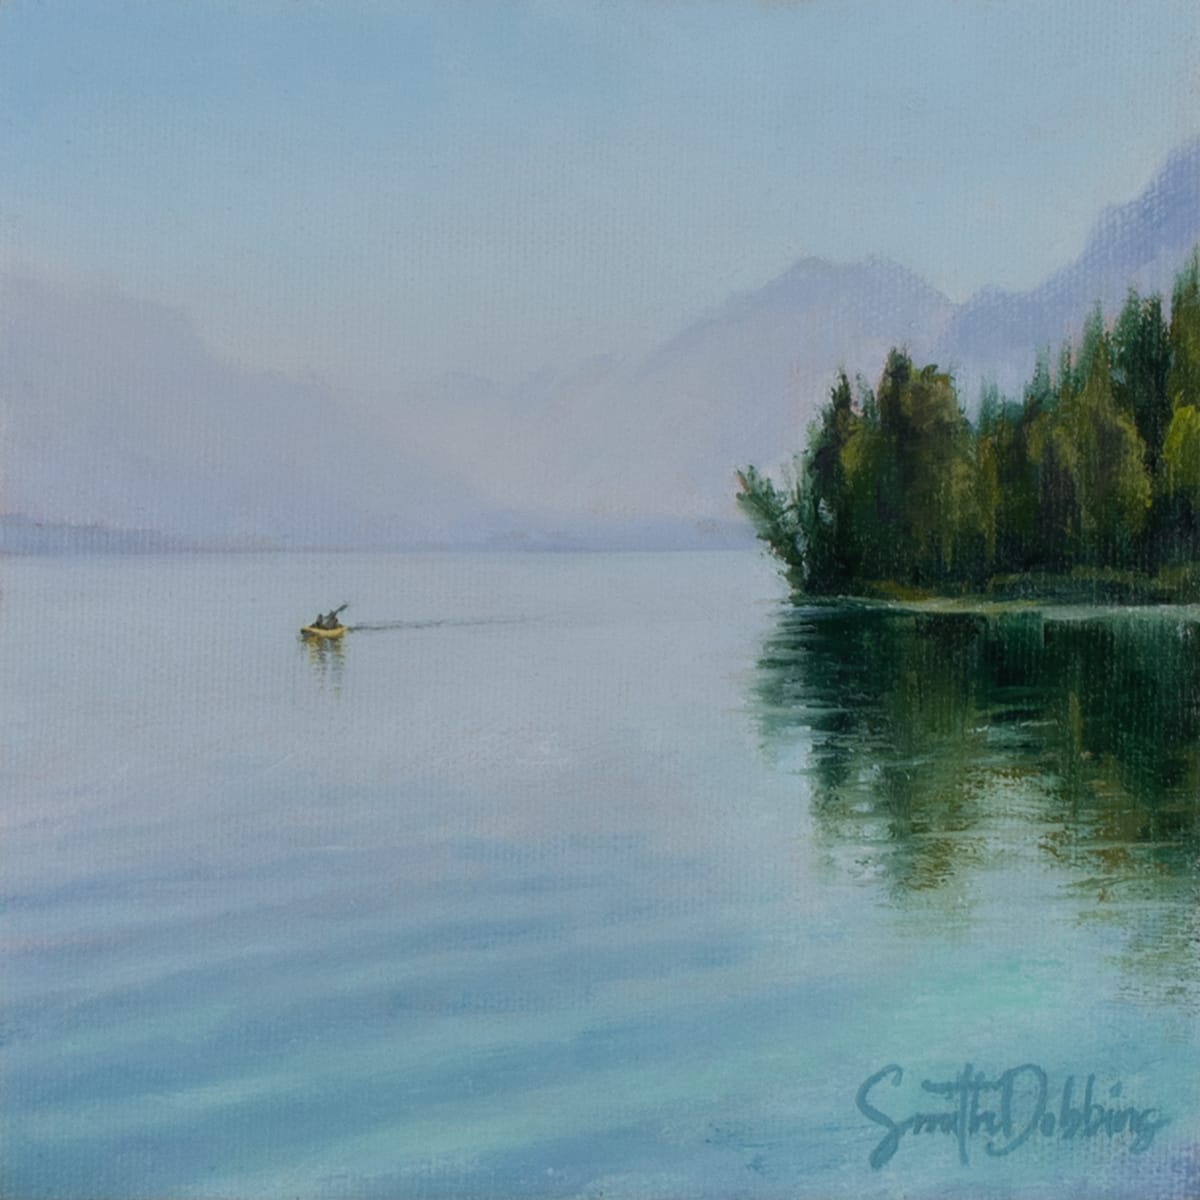 Stillness On Lake McDonald by Becky Smith-Dobbins 